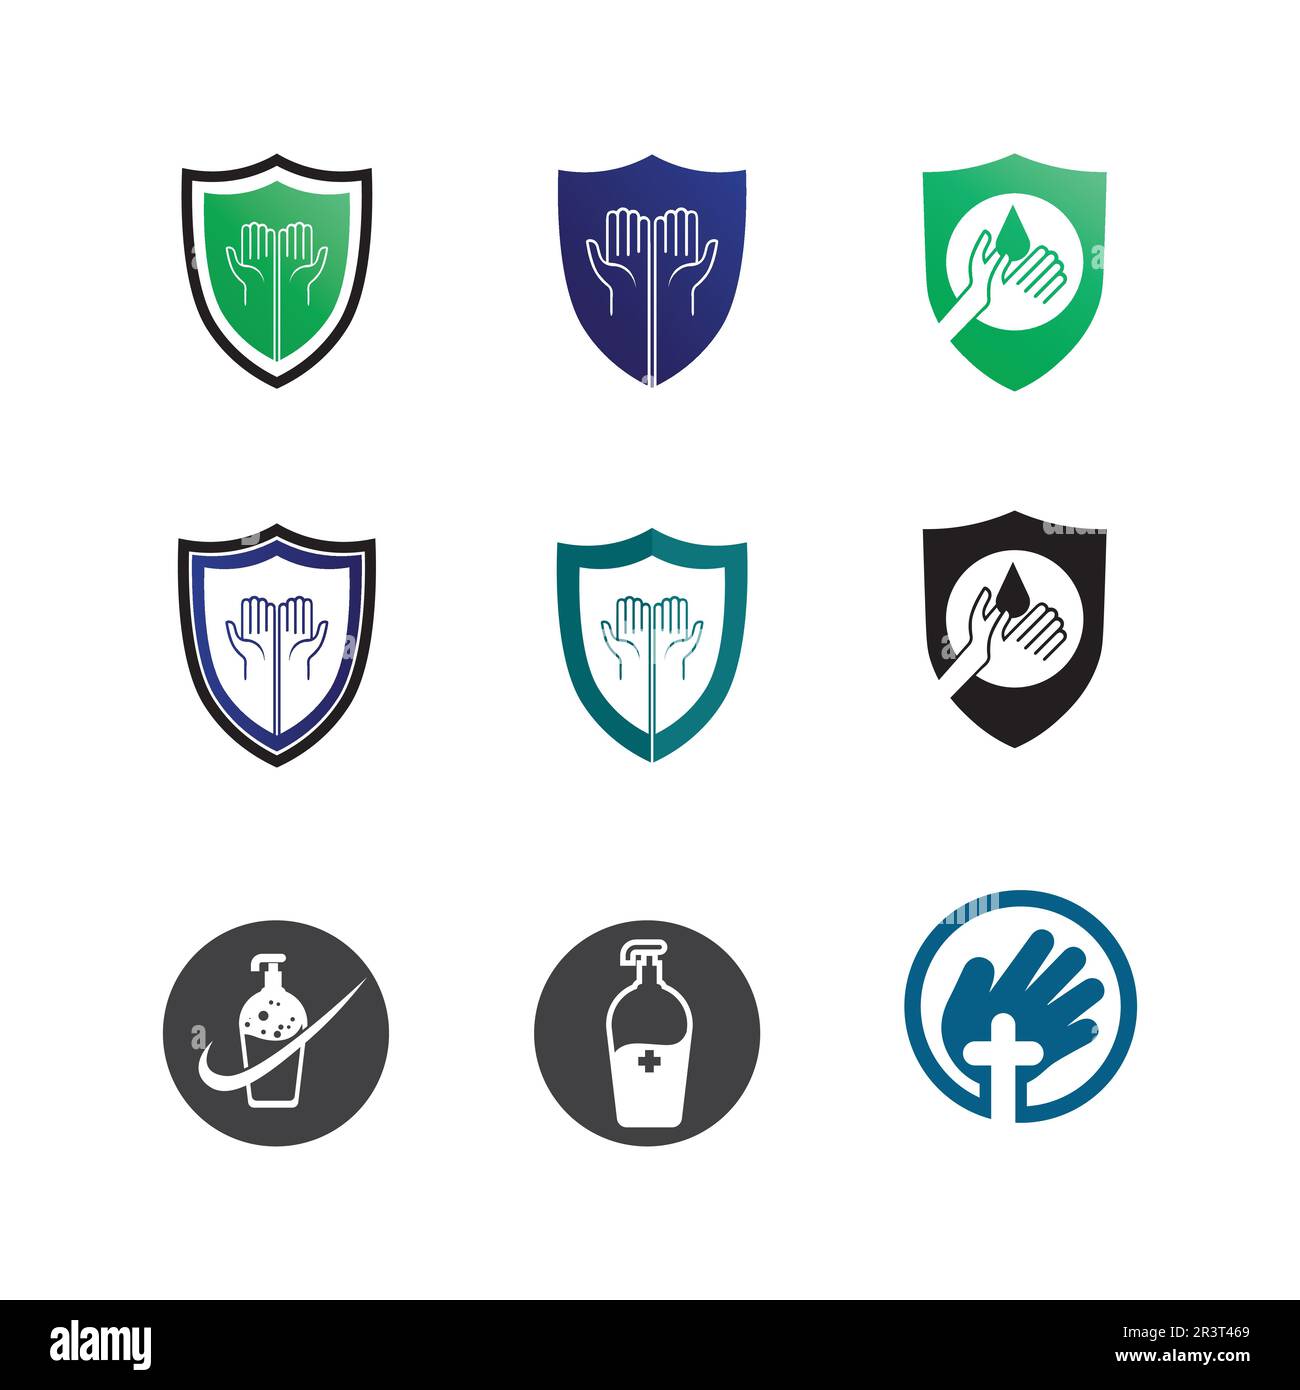 Gesundheitsschutz mit Schild Logo Design Vektor-Vorlage für medizinische Oder Versicherungsunternehmen-Vektor Stock Vektor